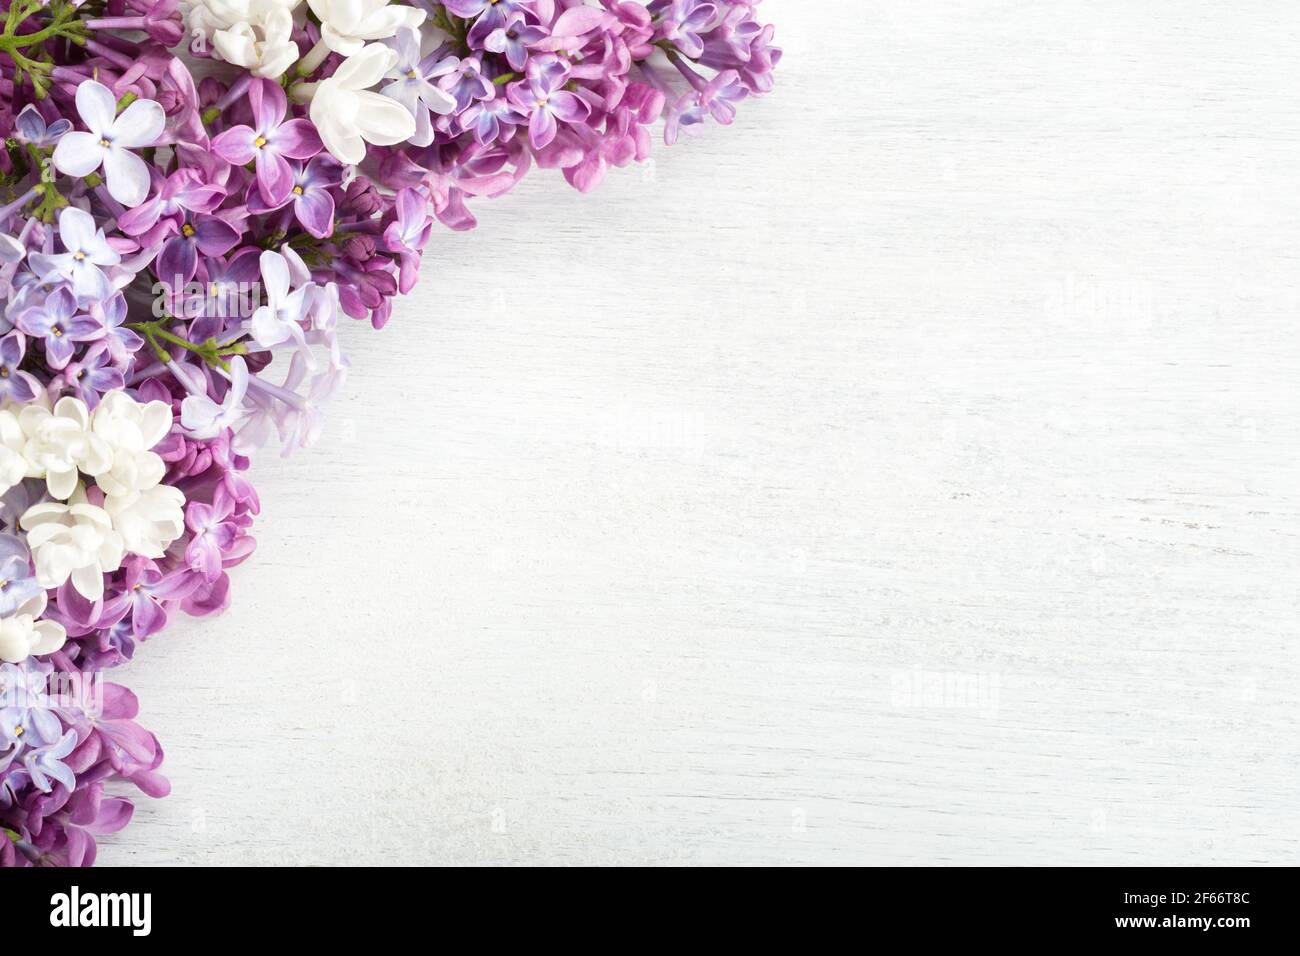 Federhintergrund. Verschiedene kleine Blüten von Lilac auf dem weißen Holz schäbigen Hintergrund. Blumenbordüre. Flach liegend. Stockfoto